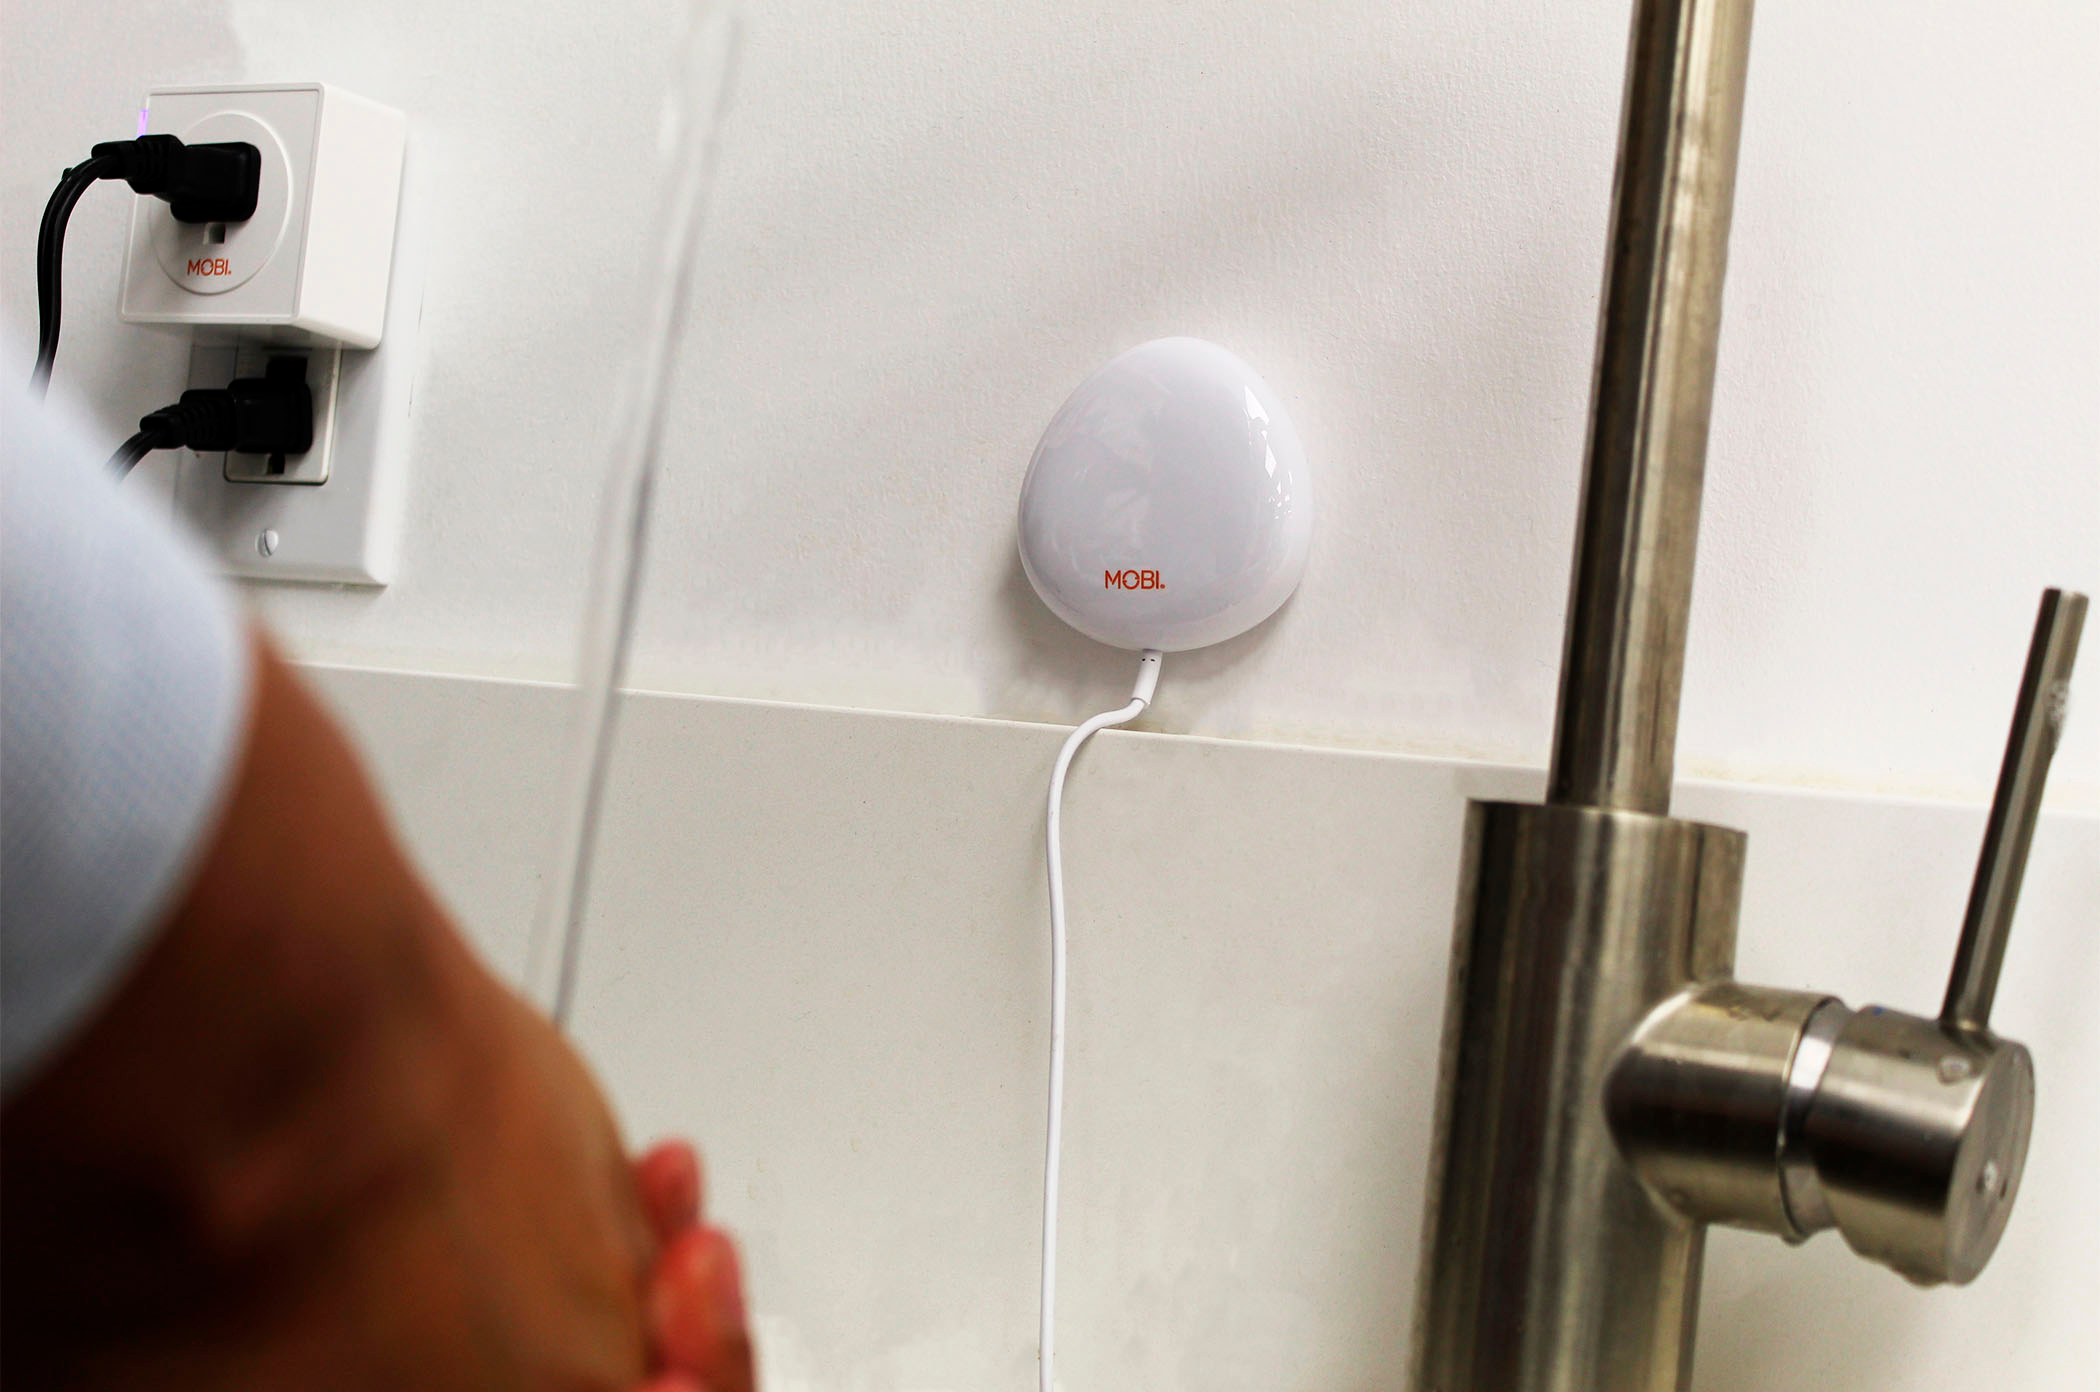  MOBI Smart Home Sensor de fugas de agua WiFi de 2.4